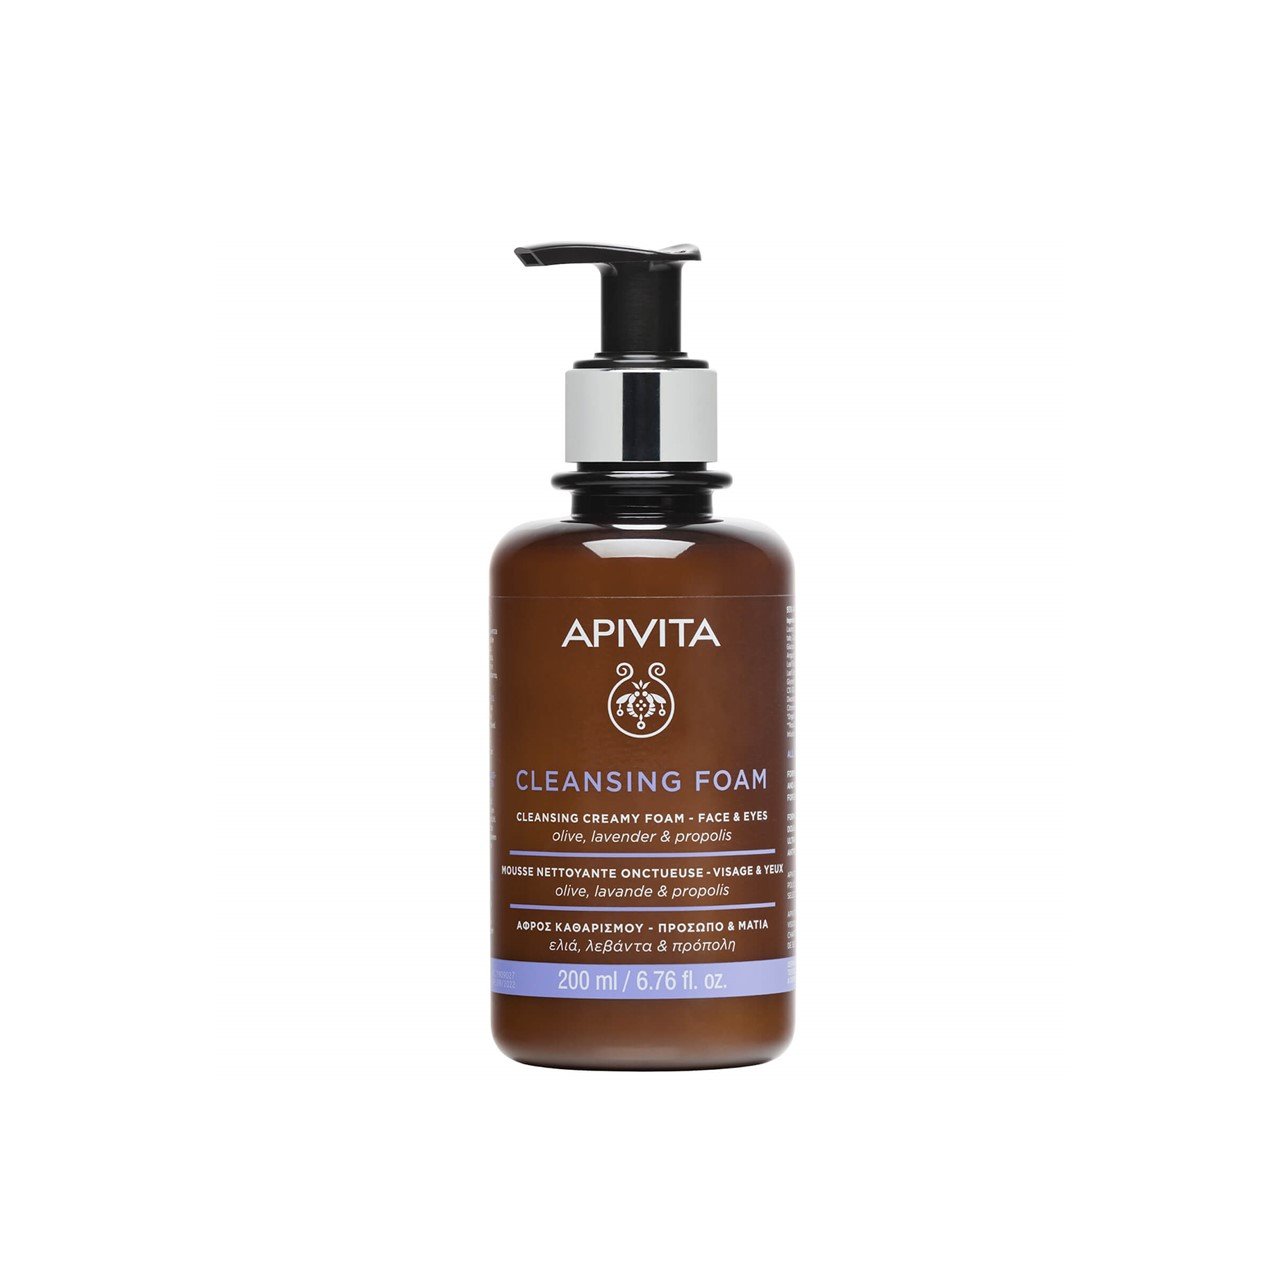 APIVITA Cleansing Foam Face & Eyes 200ml (6.76floz)